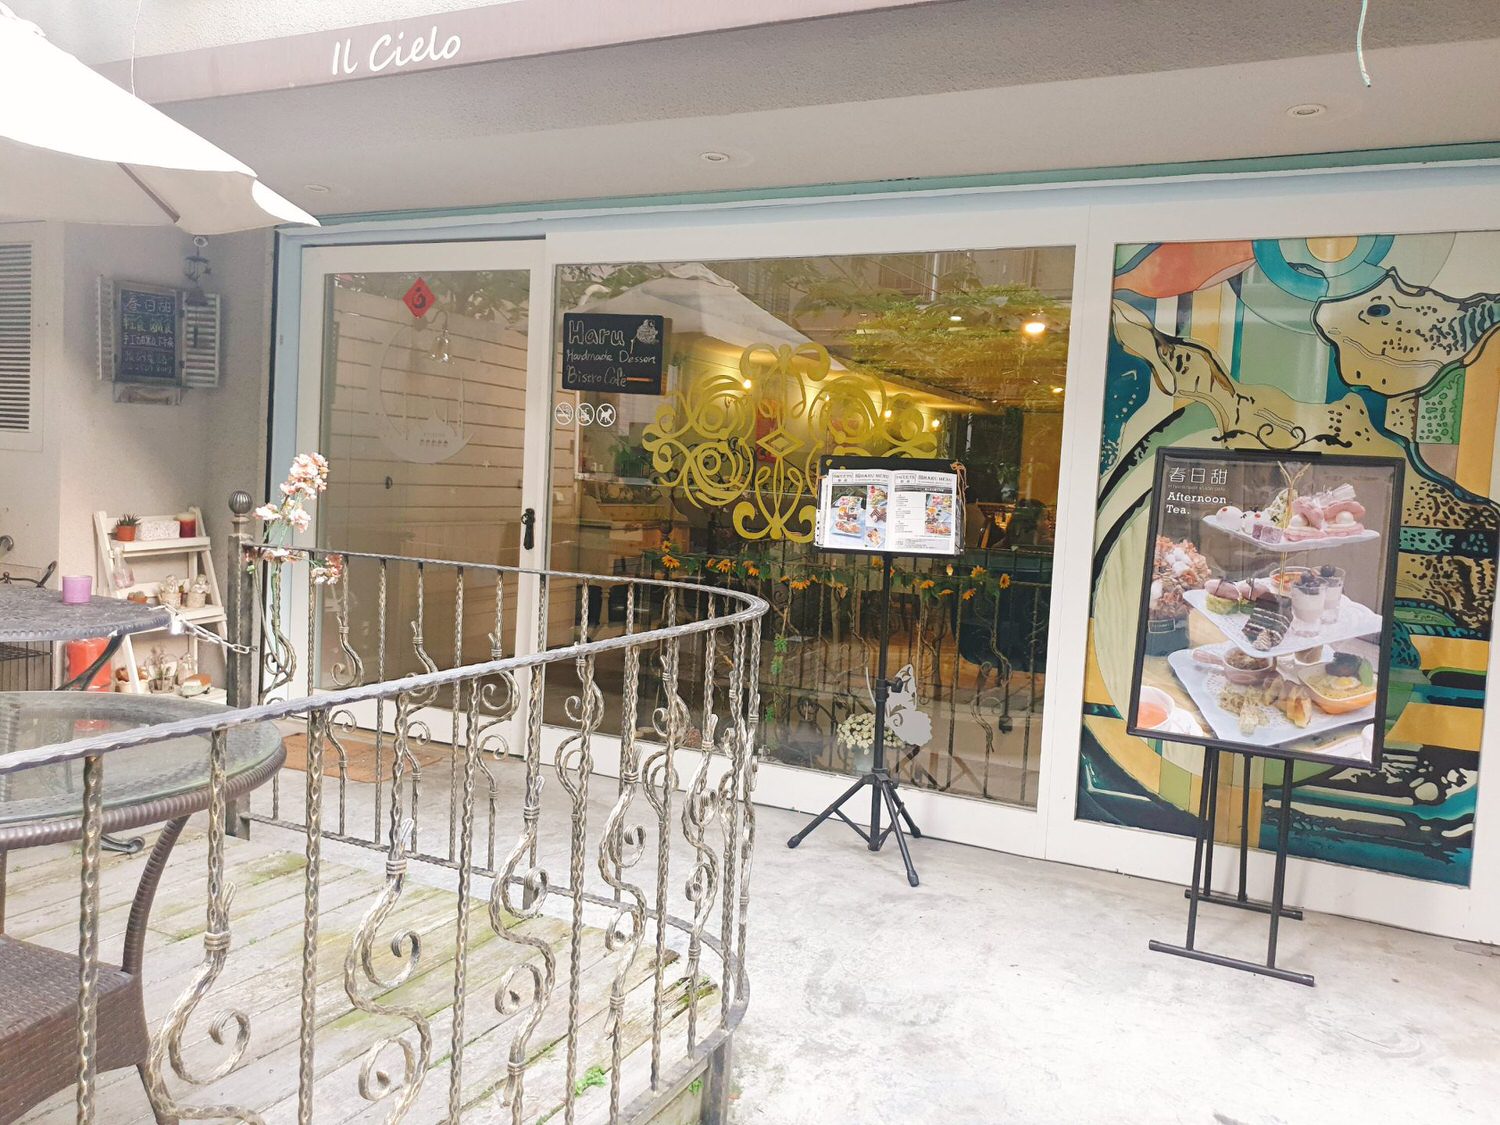 【食記】台北中山【春日甜 Bistro Café】夢幻甜點餐酒咖啡廳 | 捷運中山站美食、甜點蛋糕下午茶、小酌